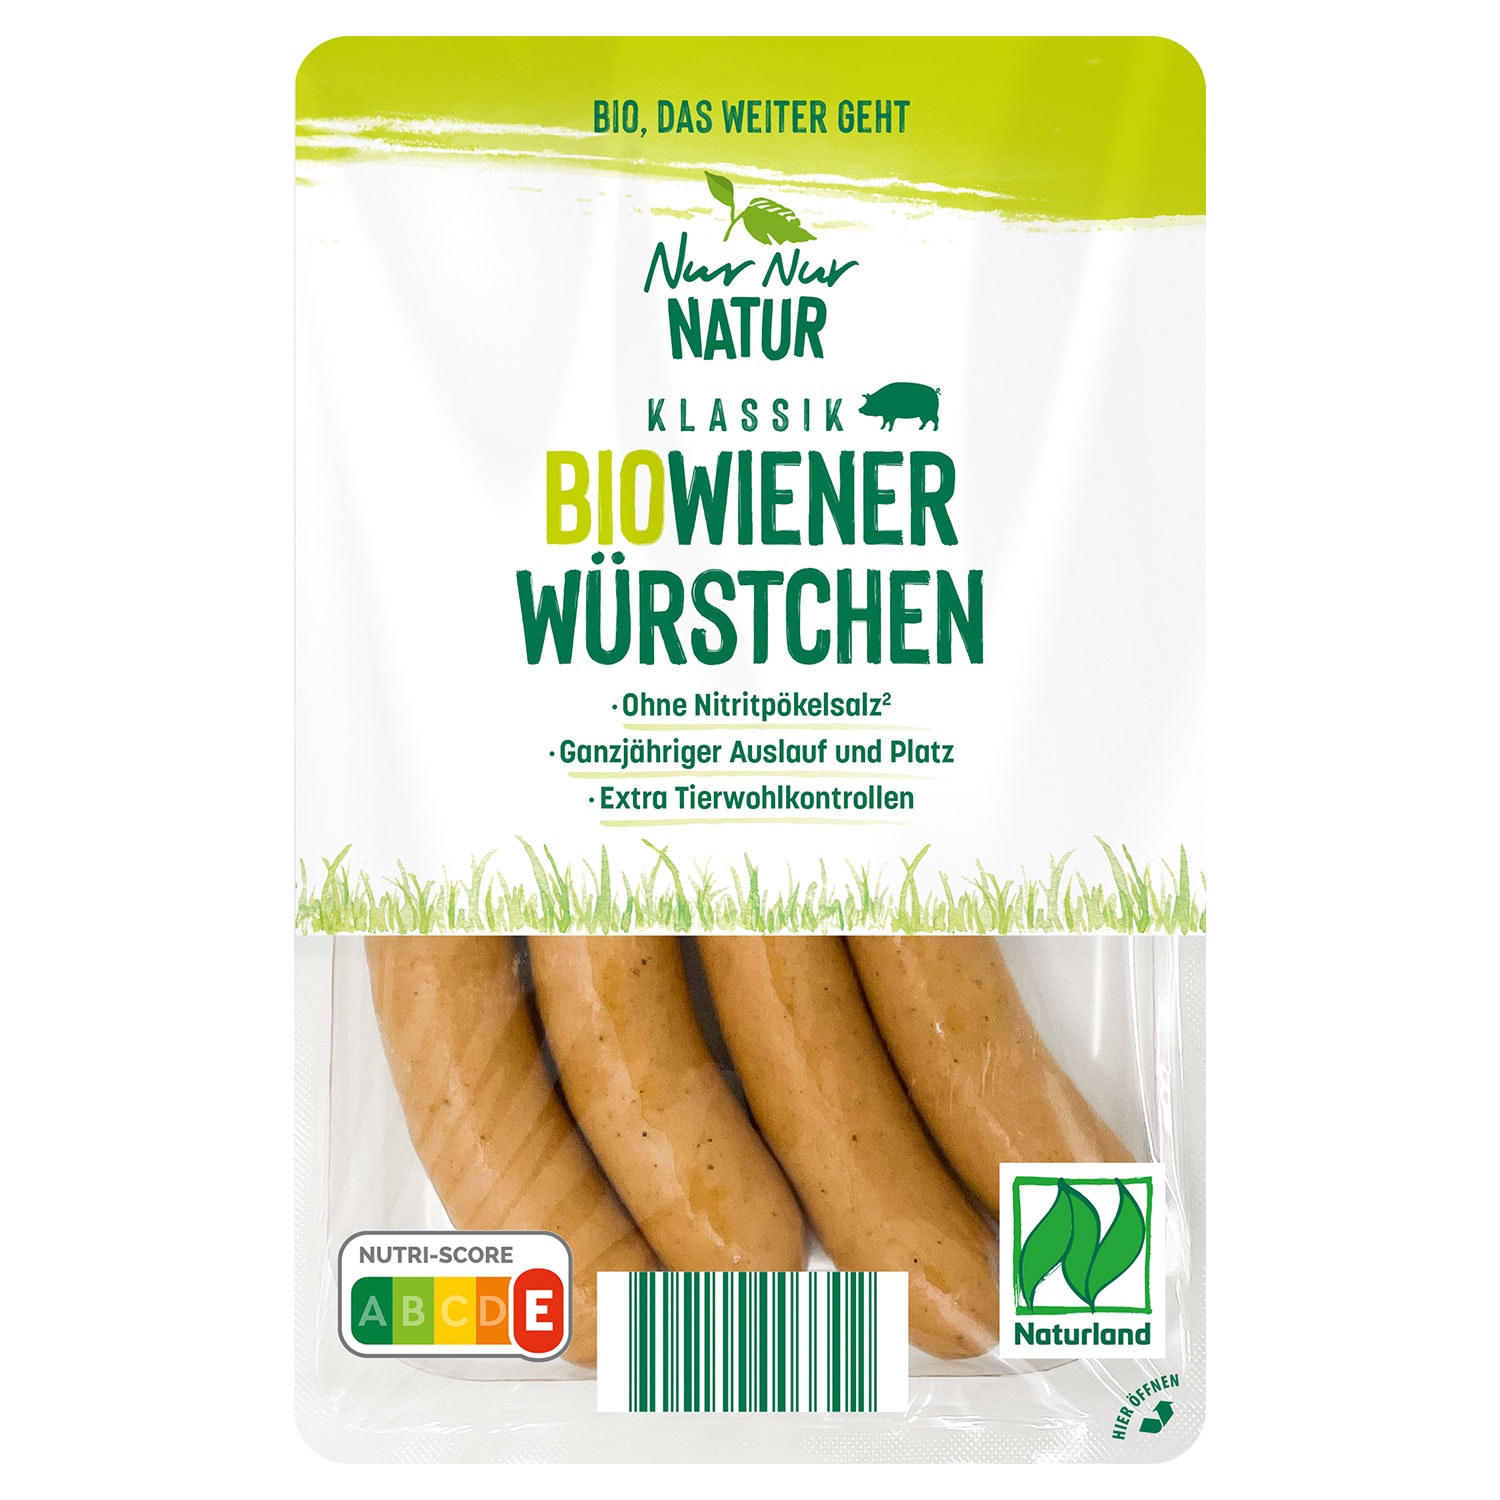 NUR NUR NATUR Bio-Wiener Würstchen 200 g